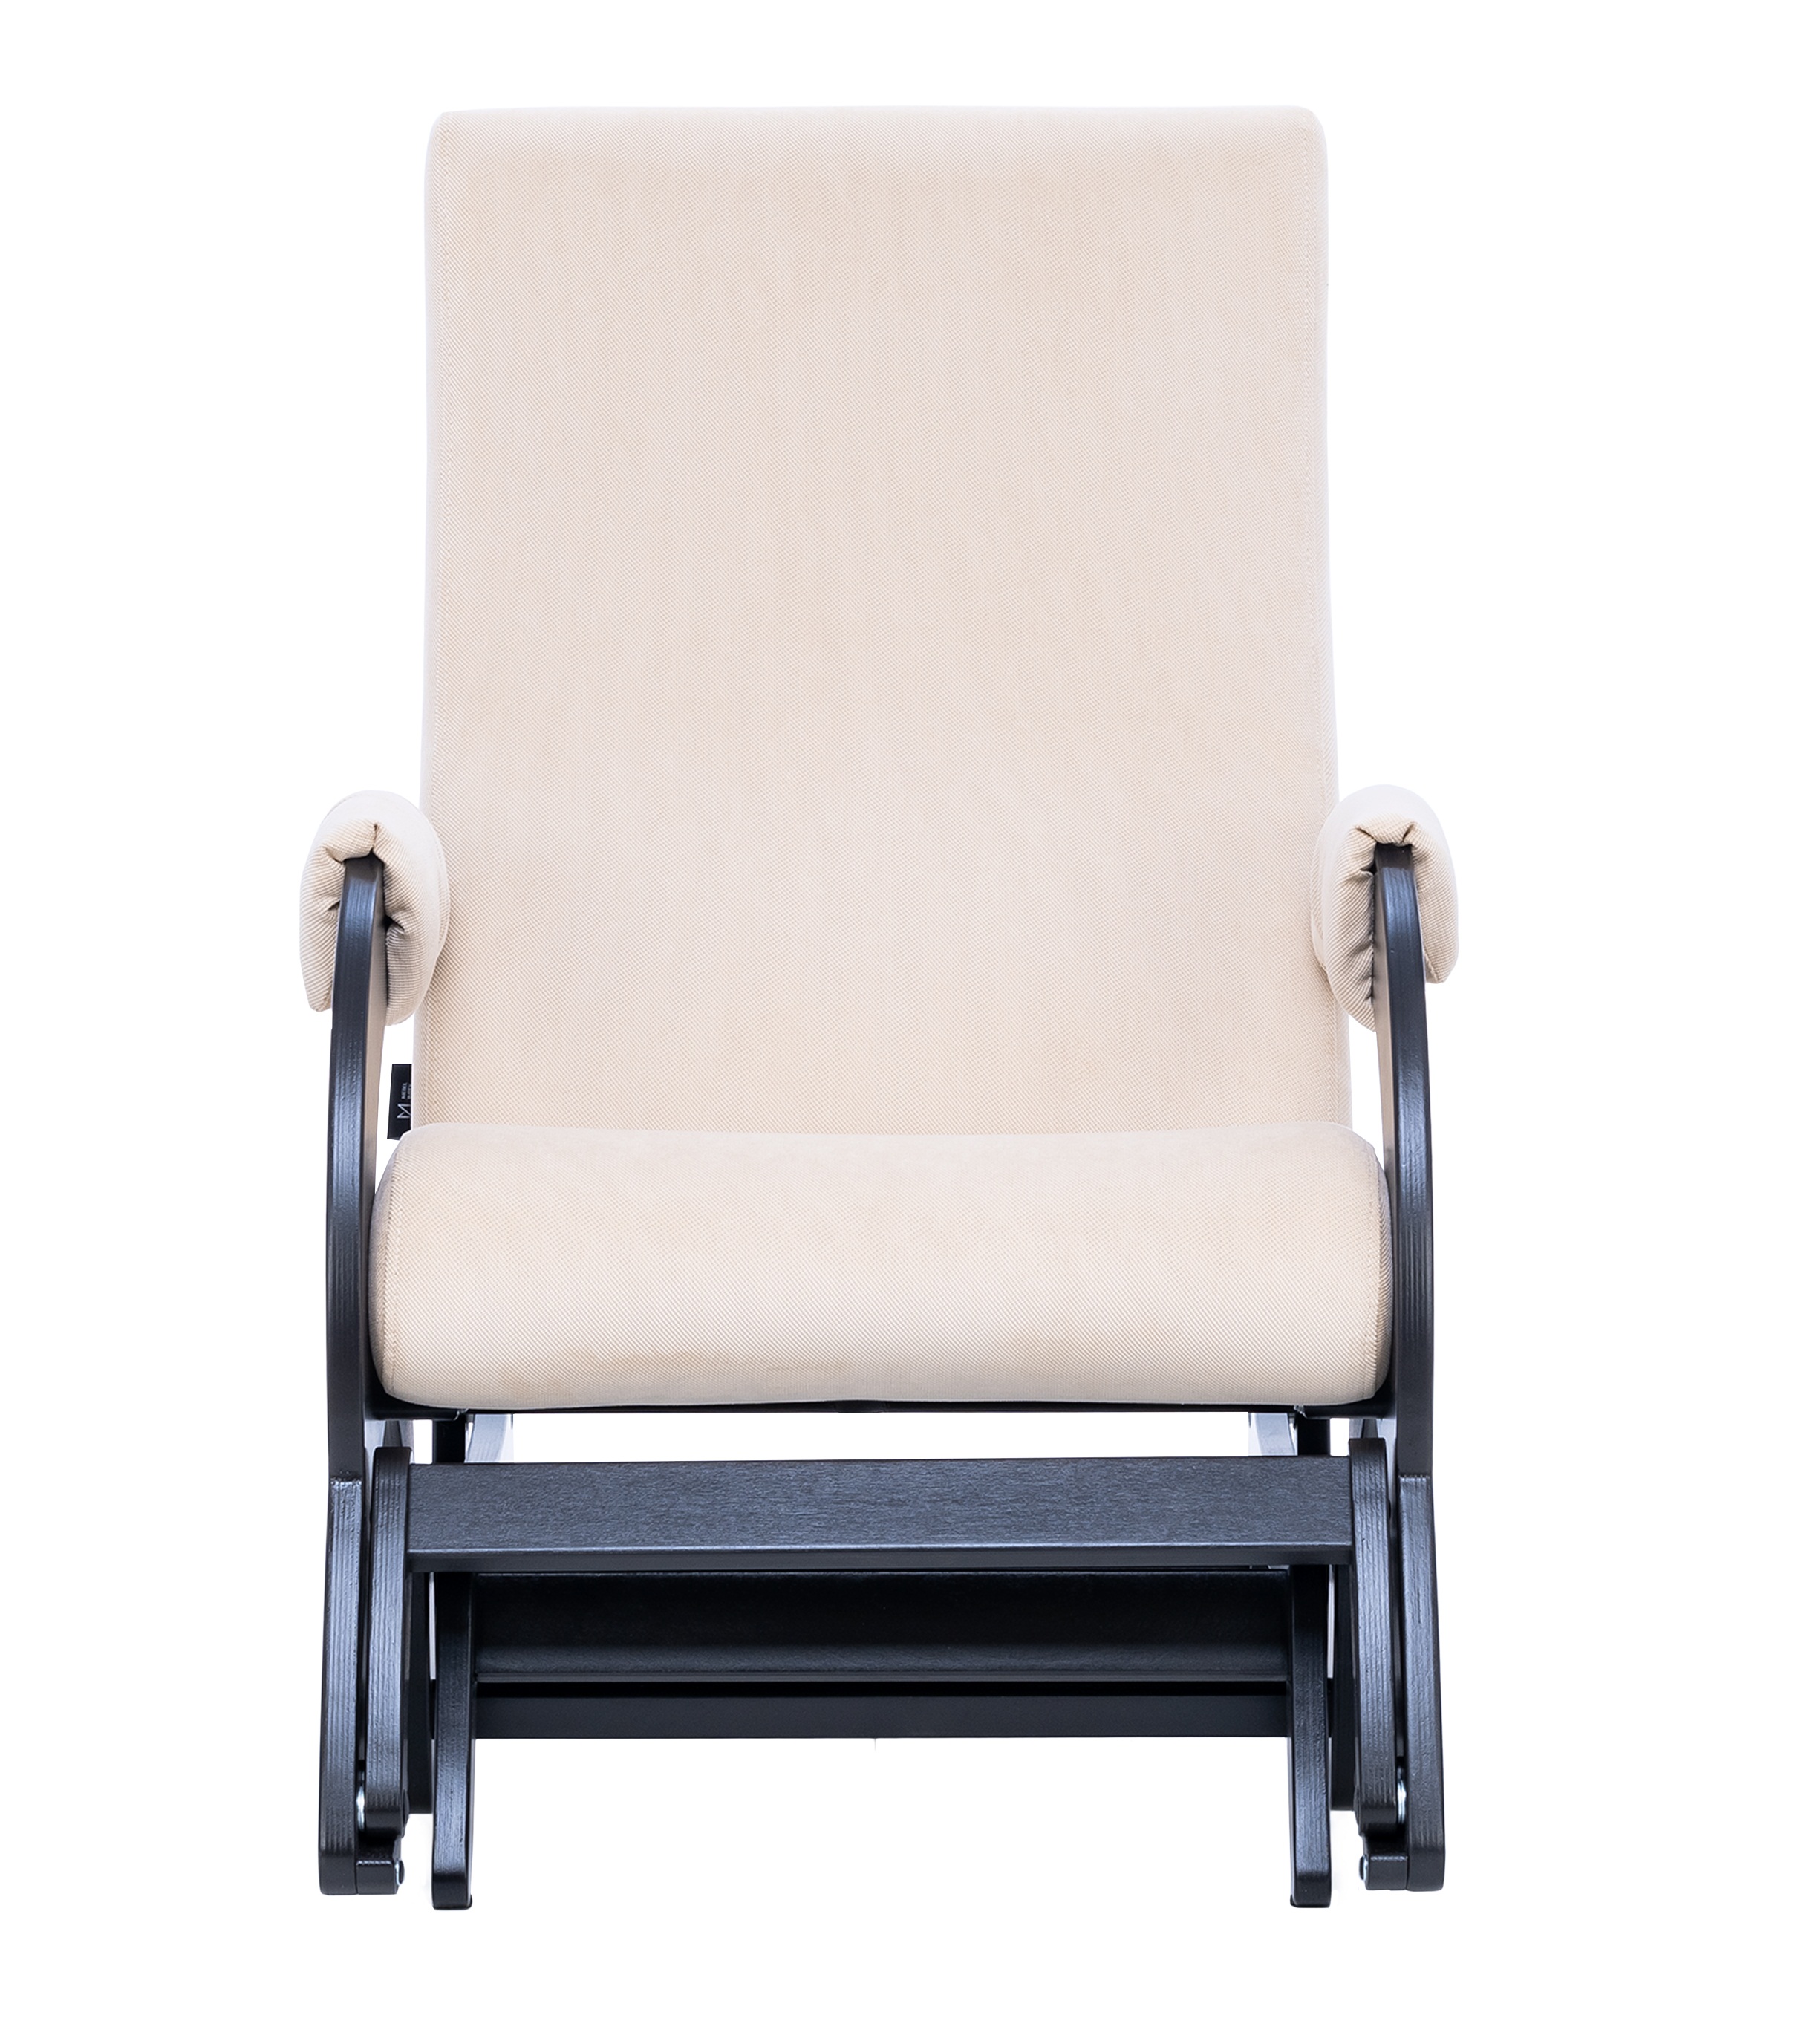 Кресло-качалка глайдер Старк с выдвижной подножкой фото 2